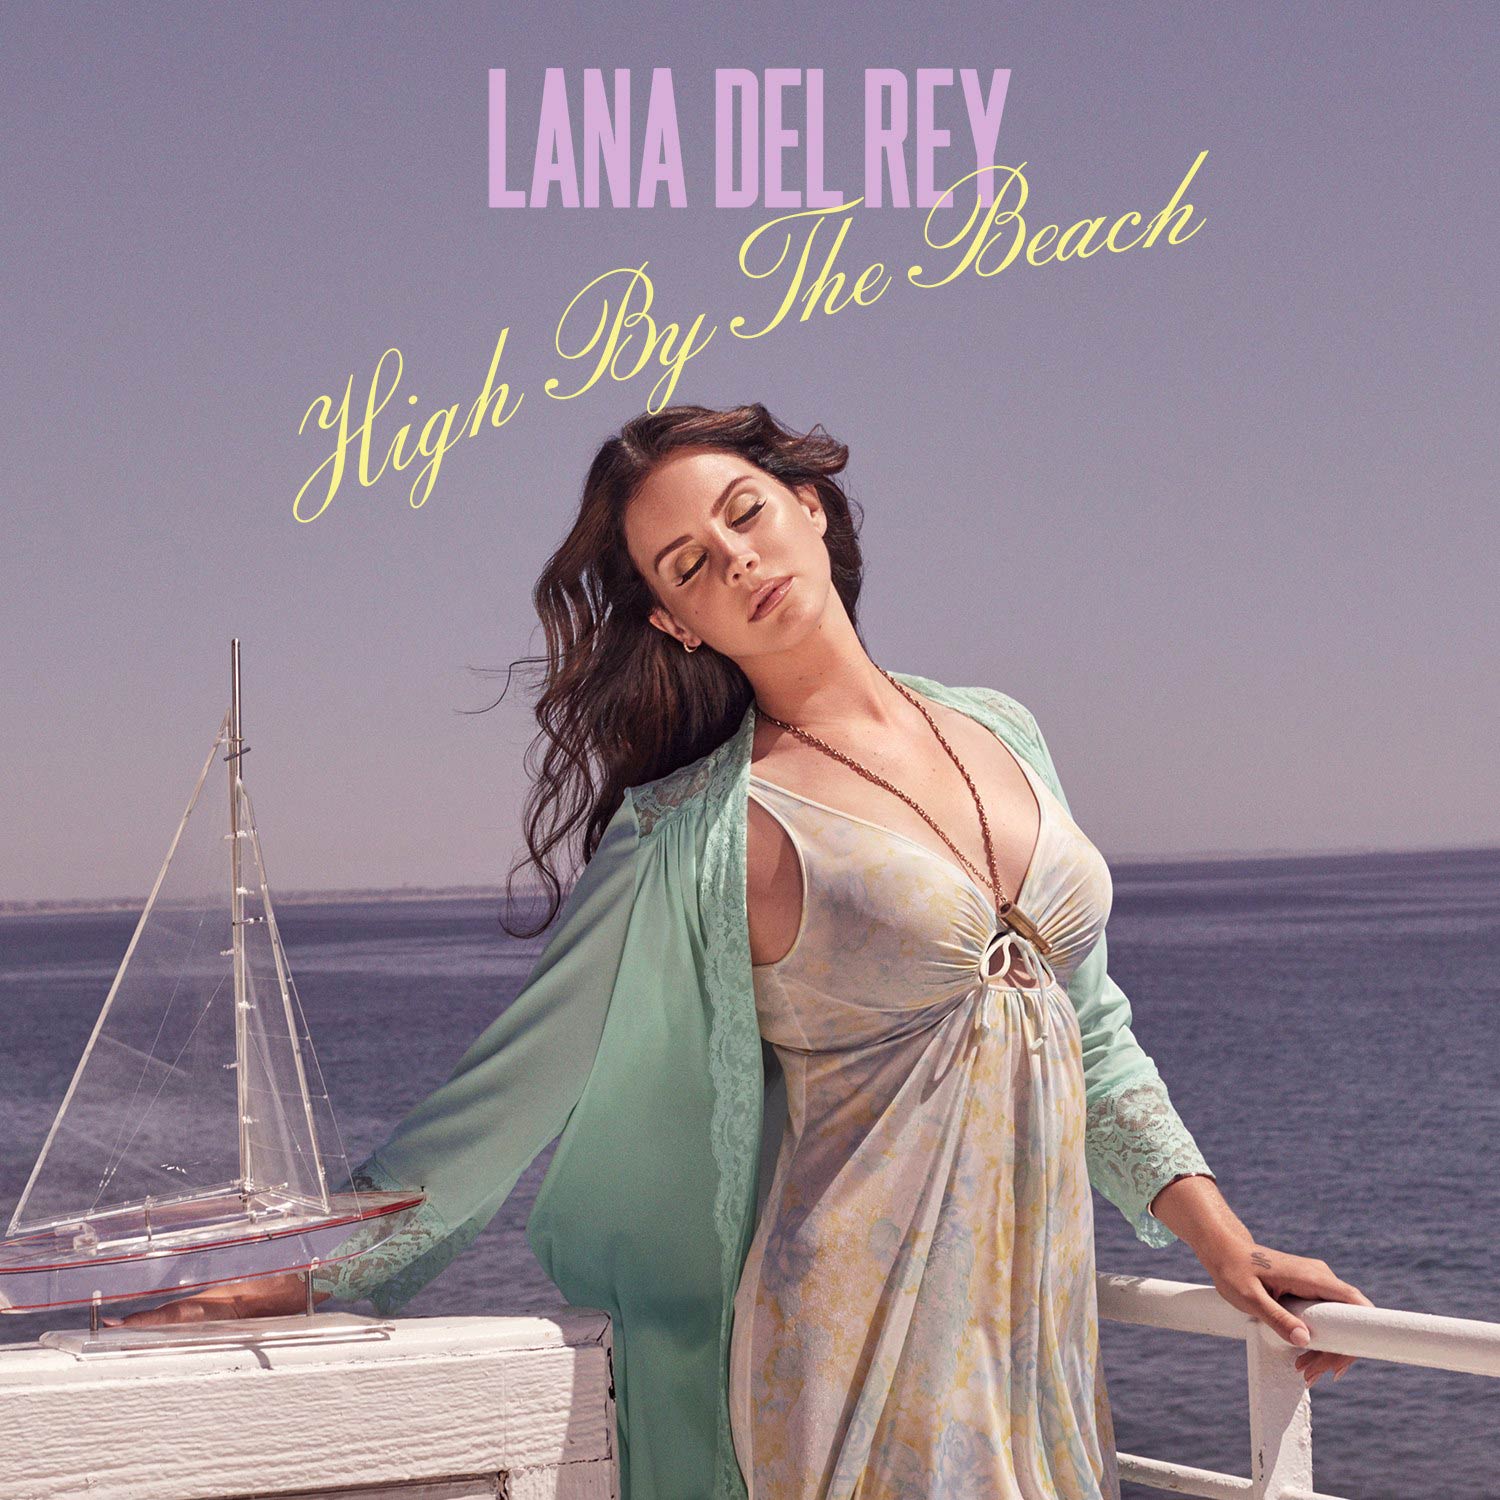 Lana Del Rey: High by the beach, la portada de la canción